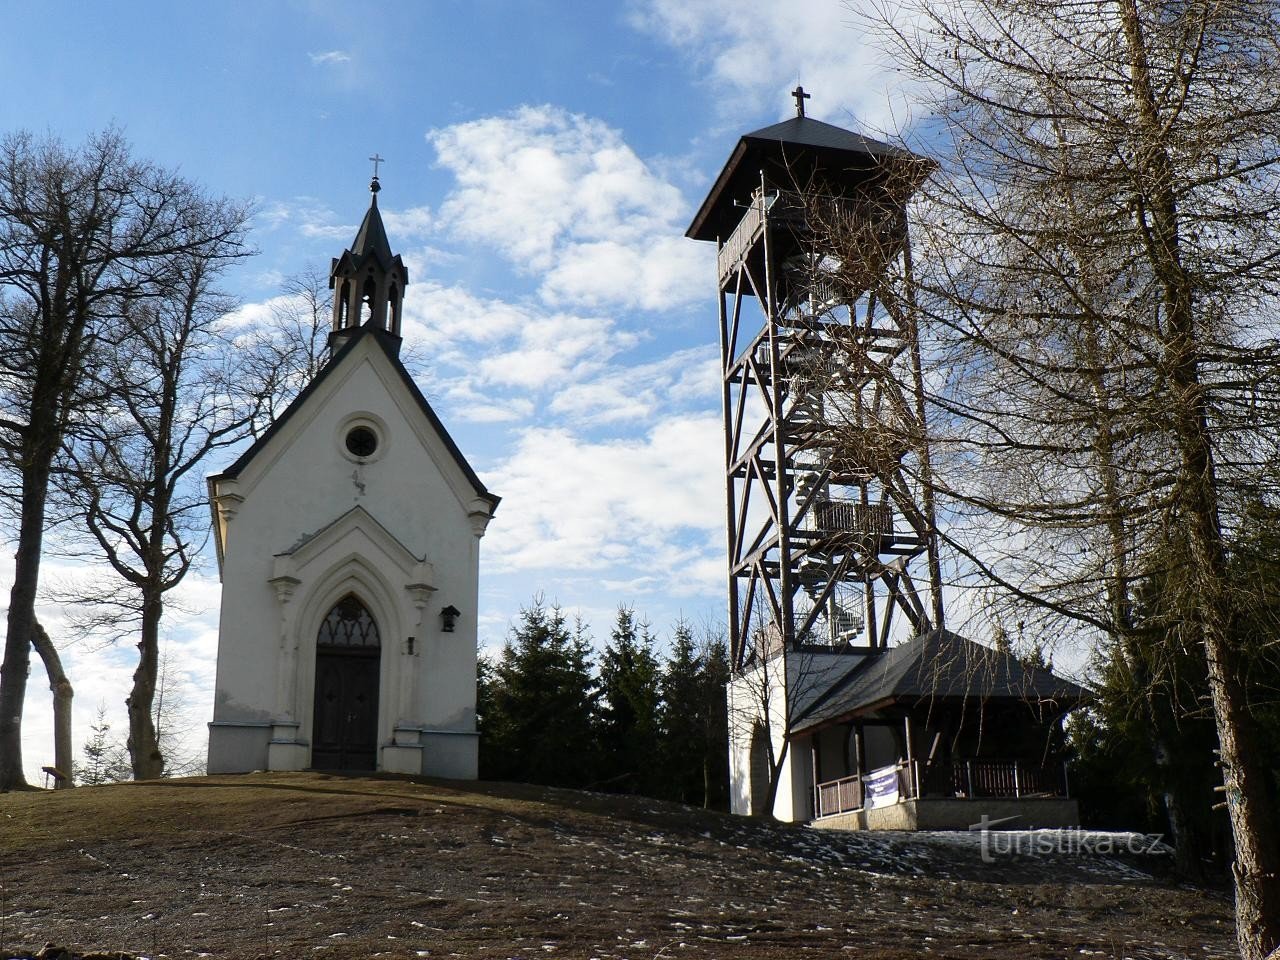 St. Marktplein, kapel en uitkijktoren